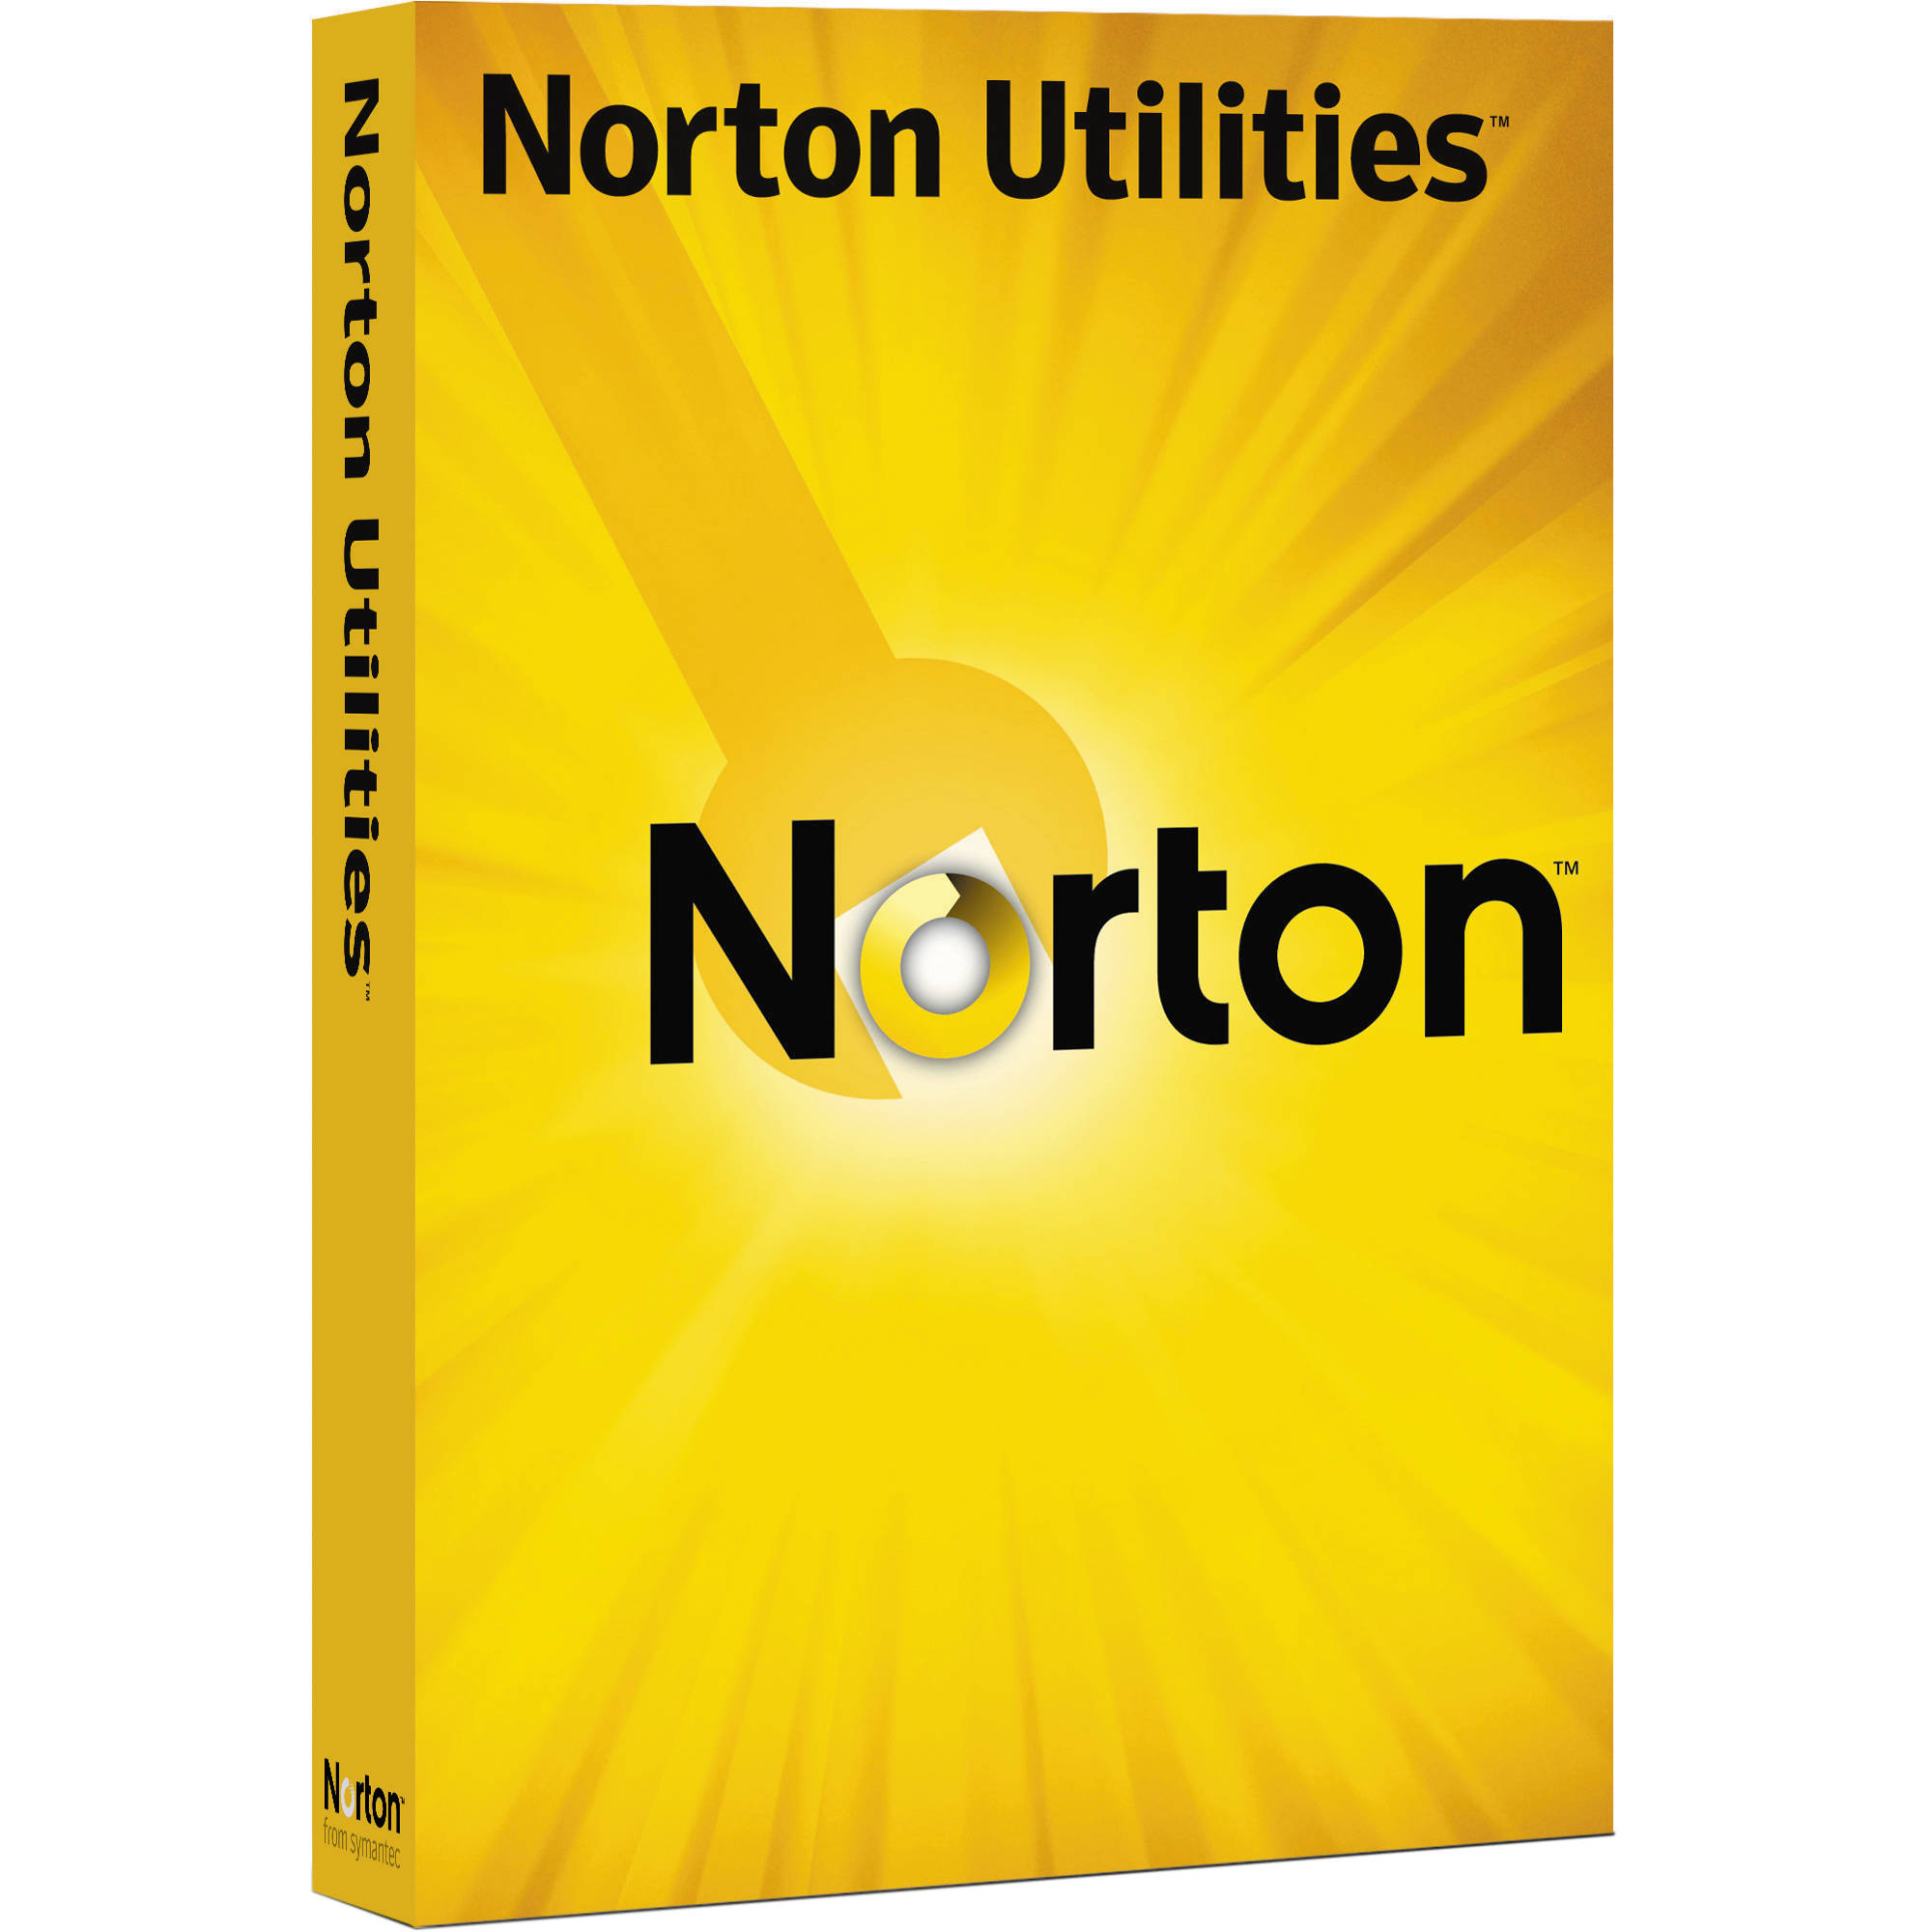 Symantec Norton Utilities Crack 22.20.5.39 Latest Version